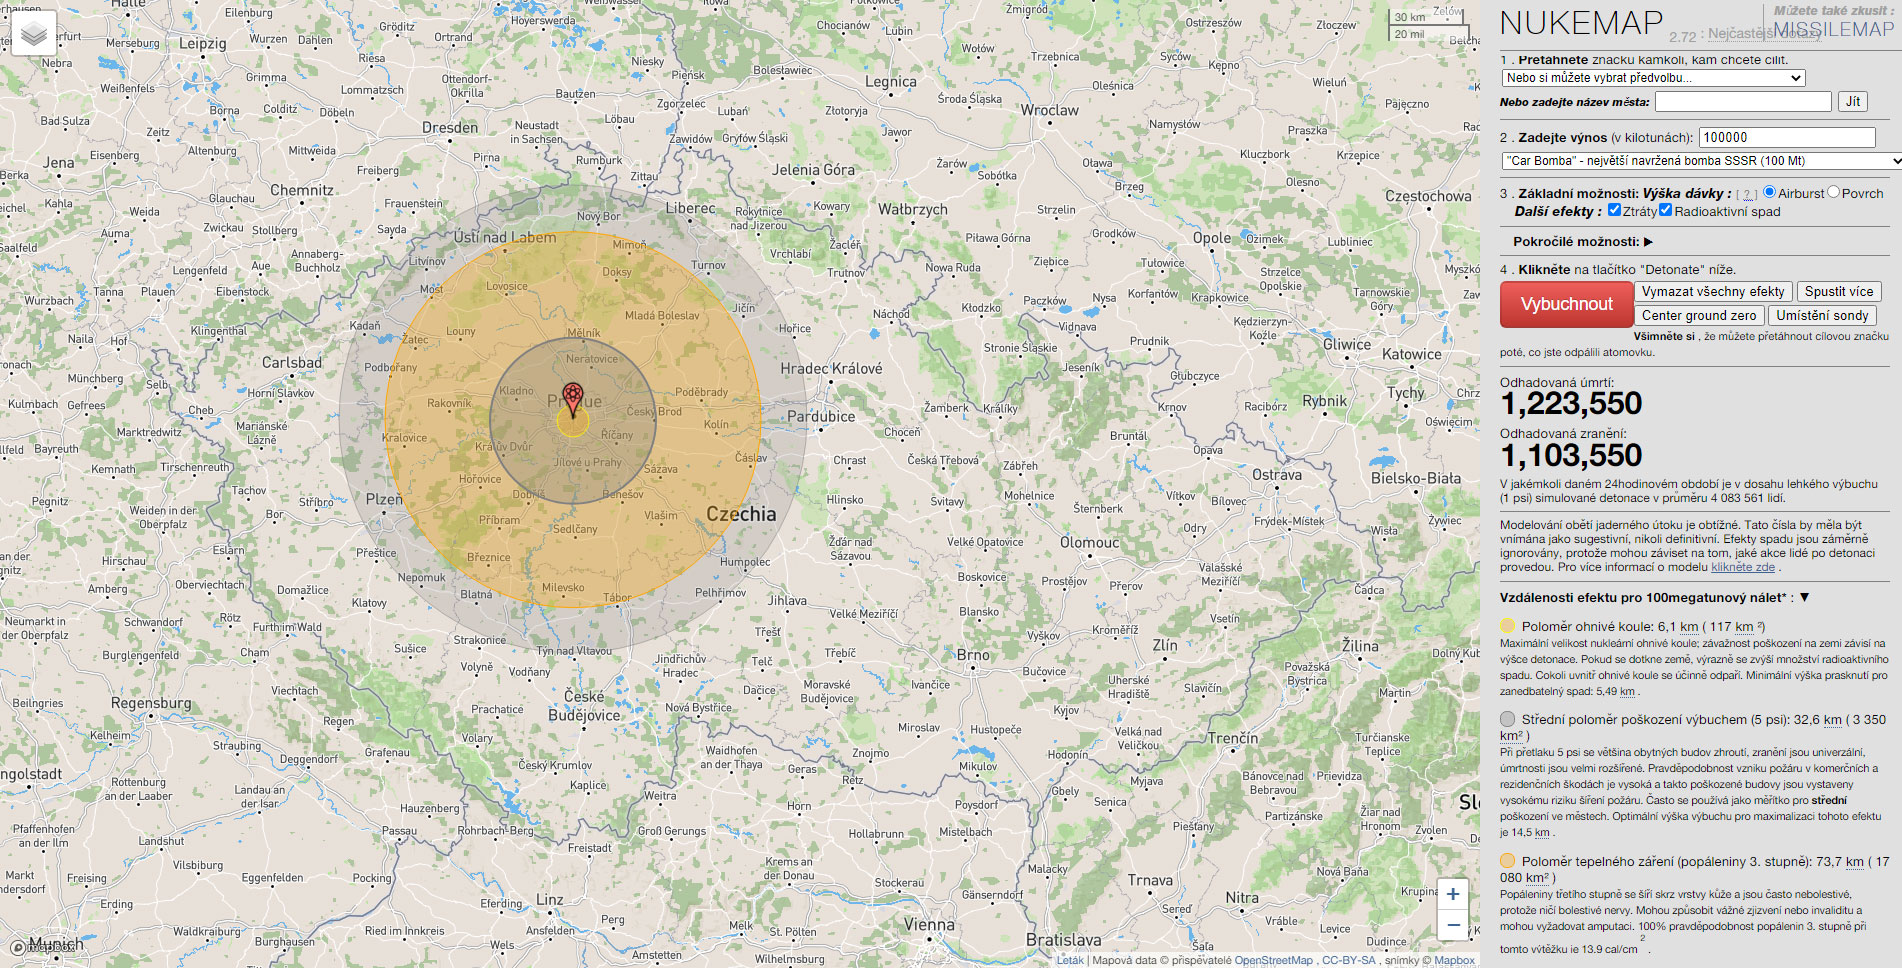 Simulace atomové bomby Tsar Bomb - Největší navržená bomba o síle 100 megatun (Praha, Česká republika)